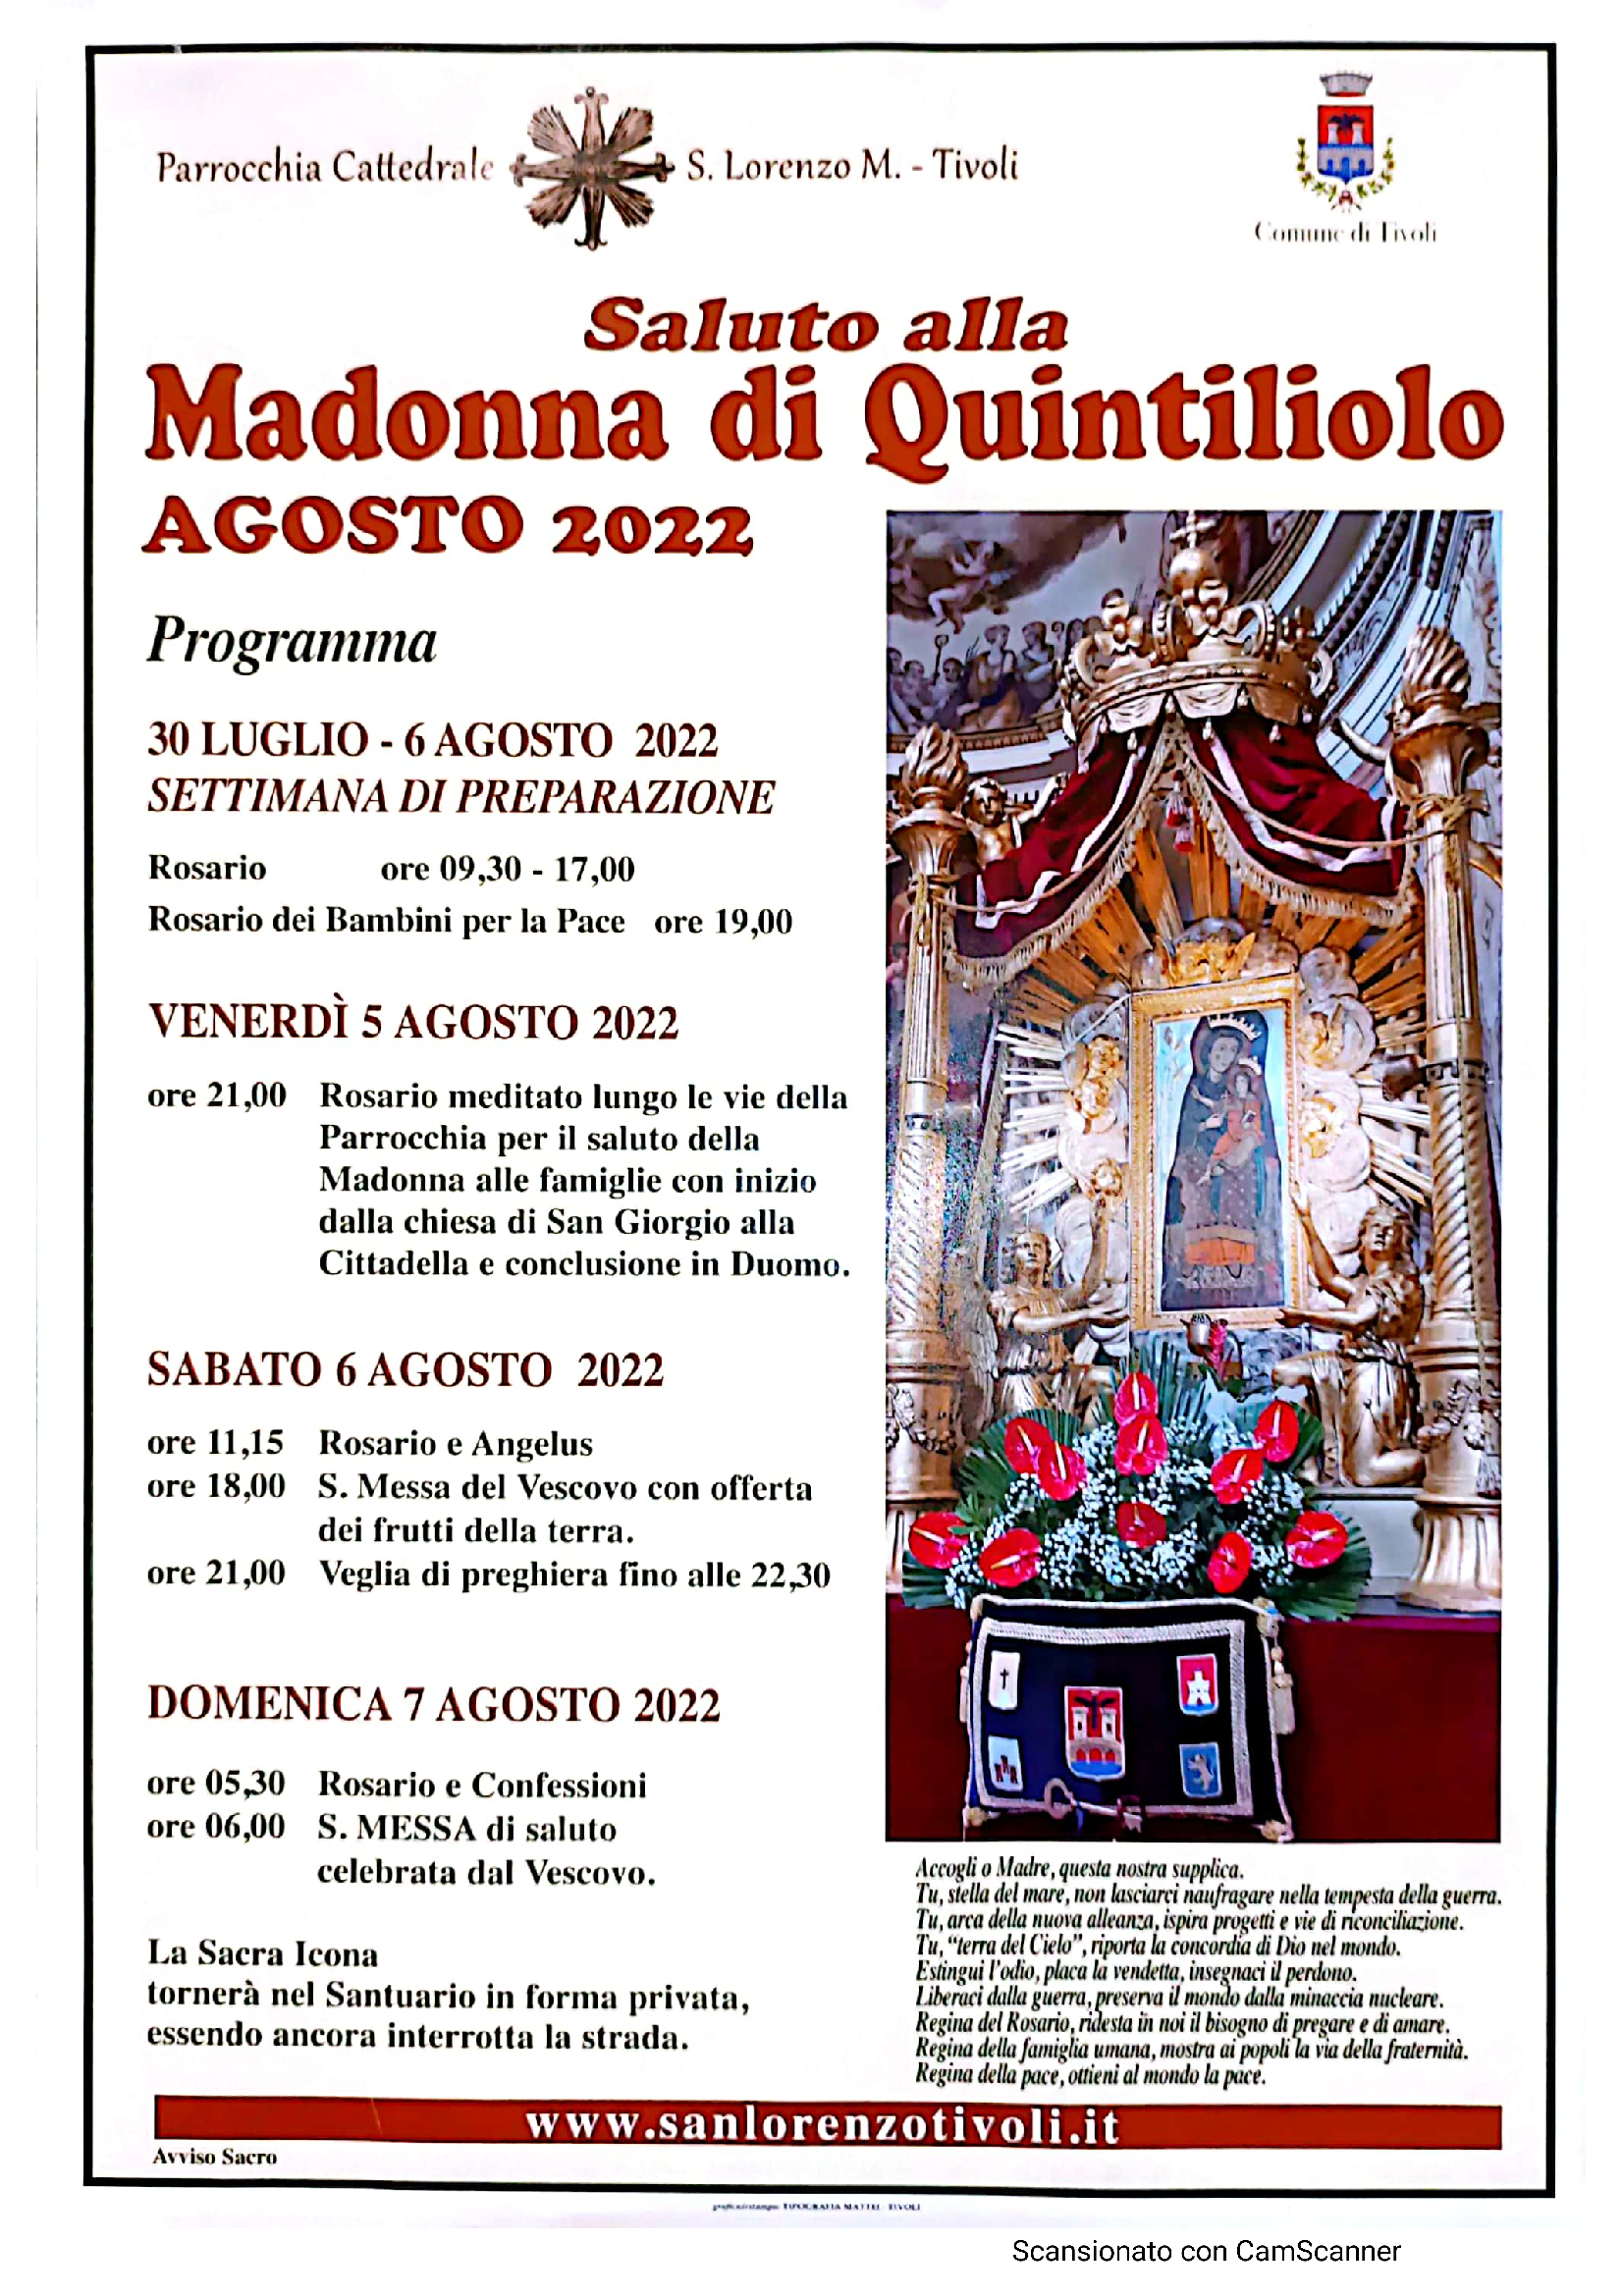 Saluto alla Madonna di Quintiliolo. Il Programma